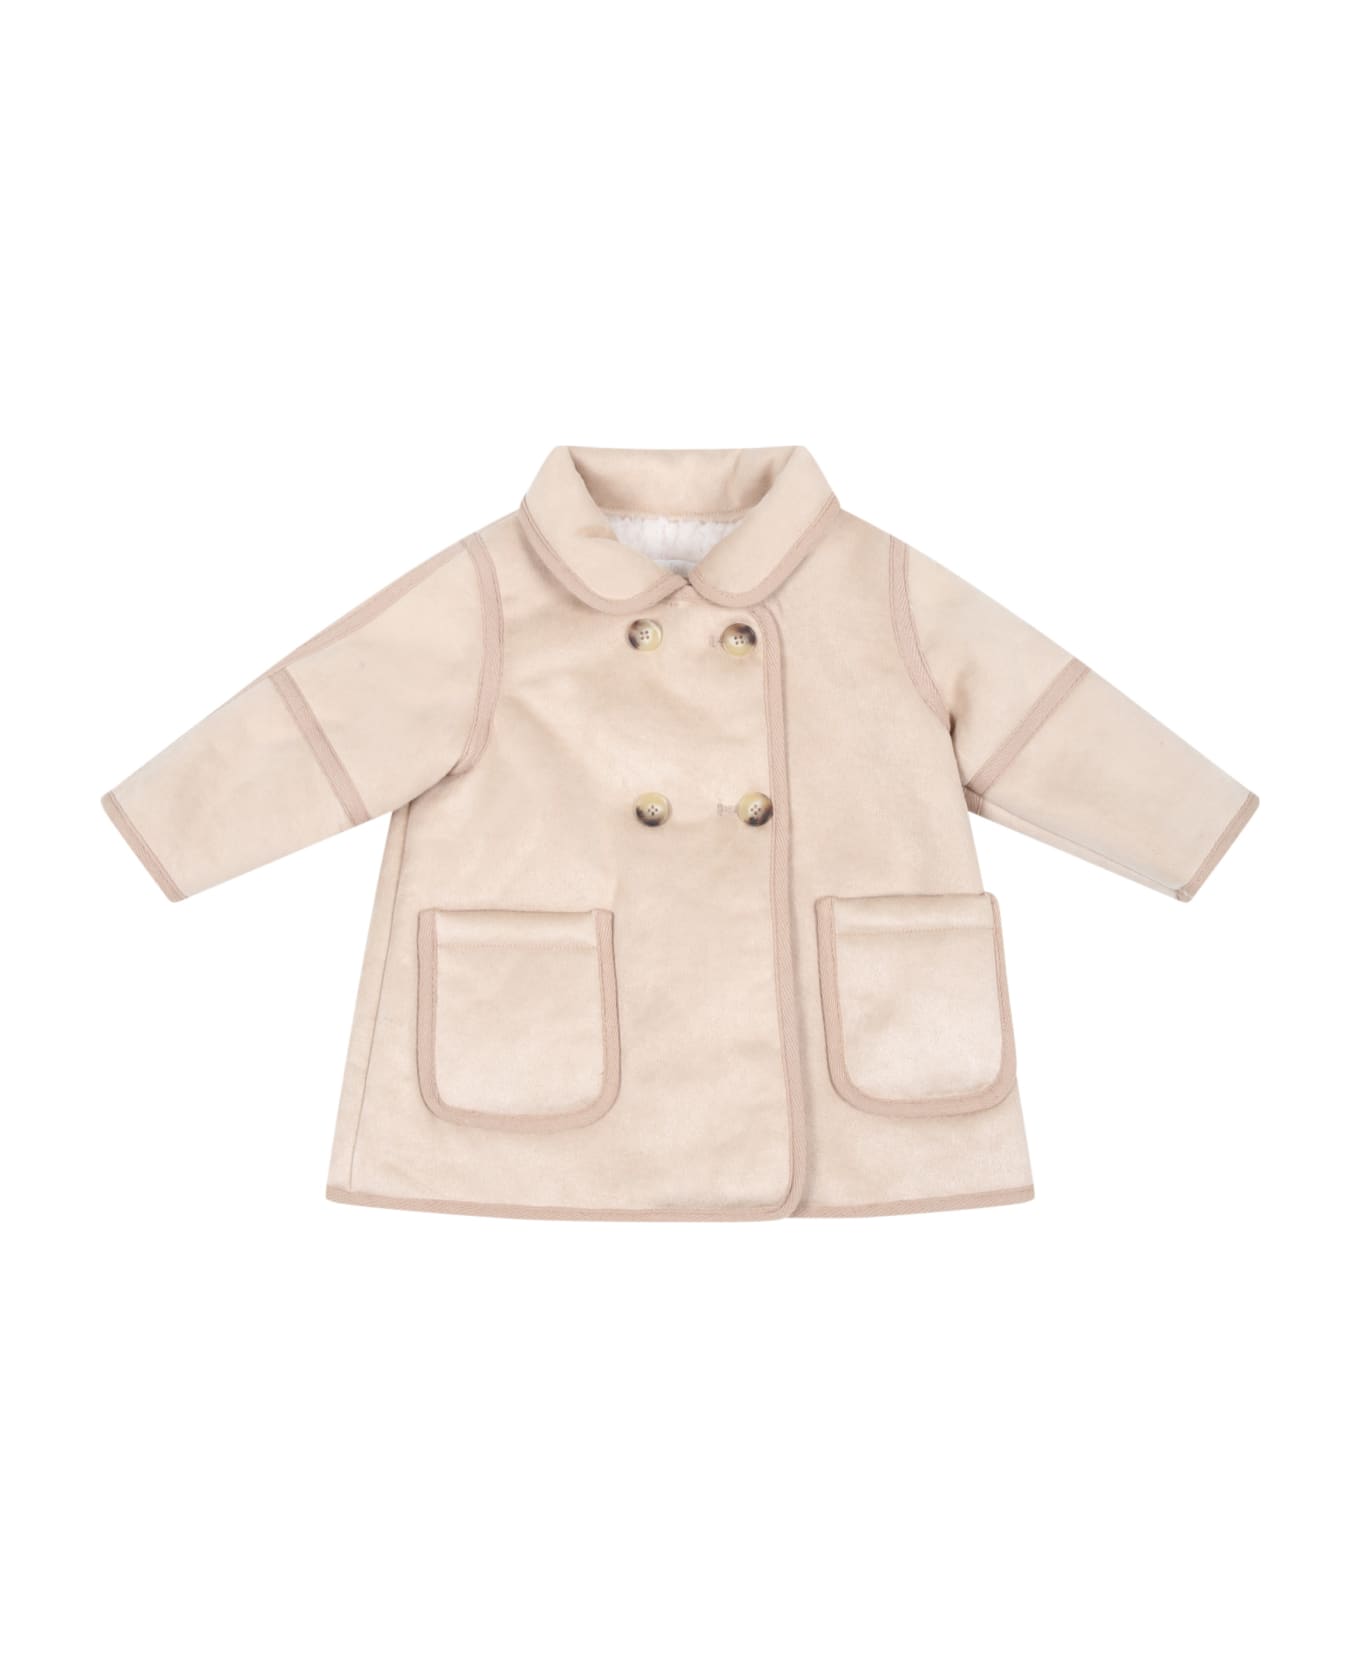 Chloé Beige Coat For Baby Girl - Beige